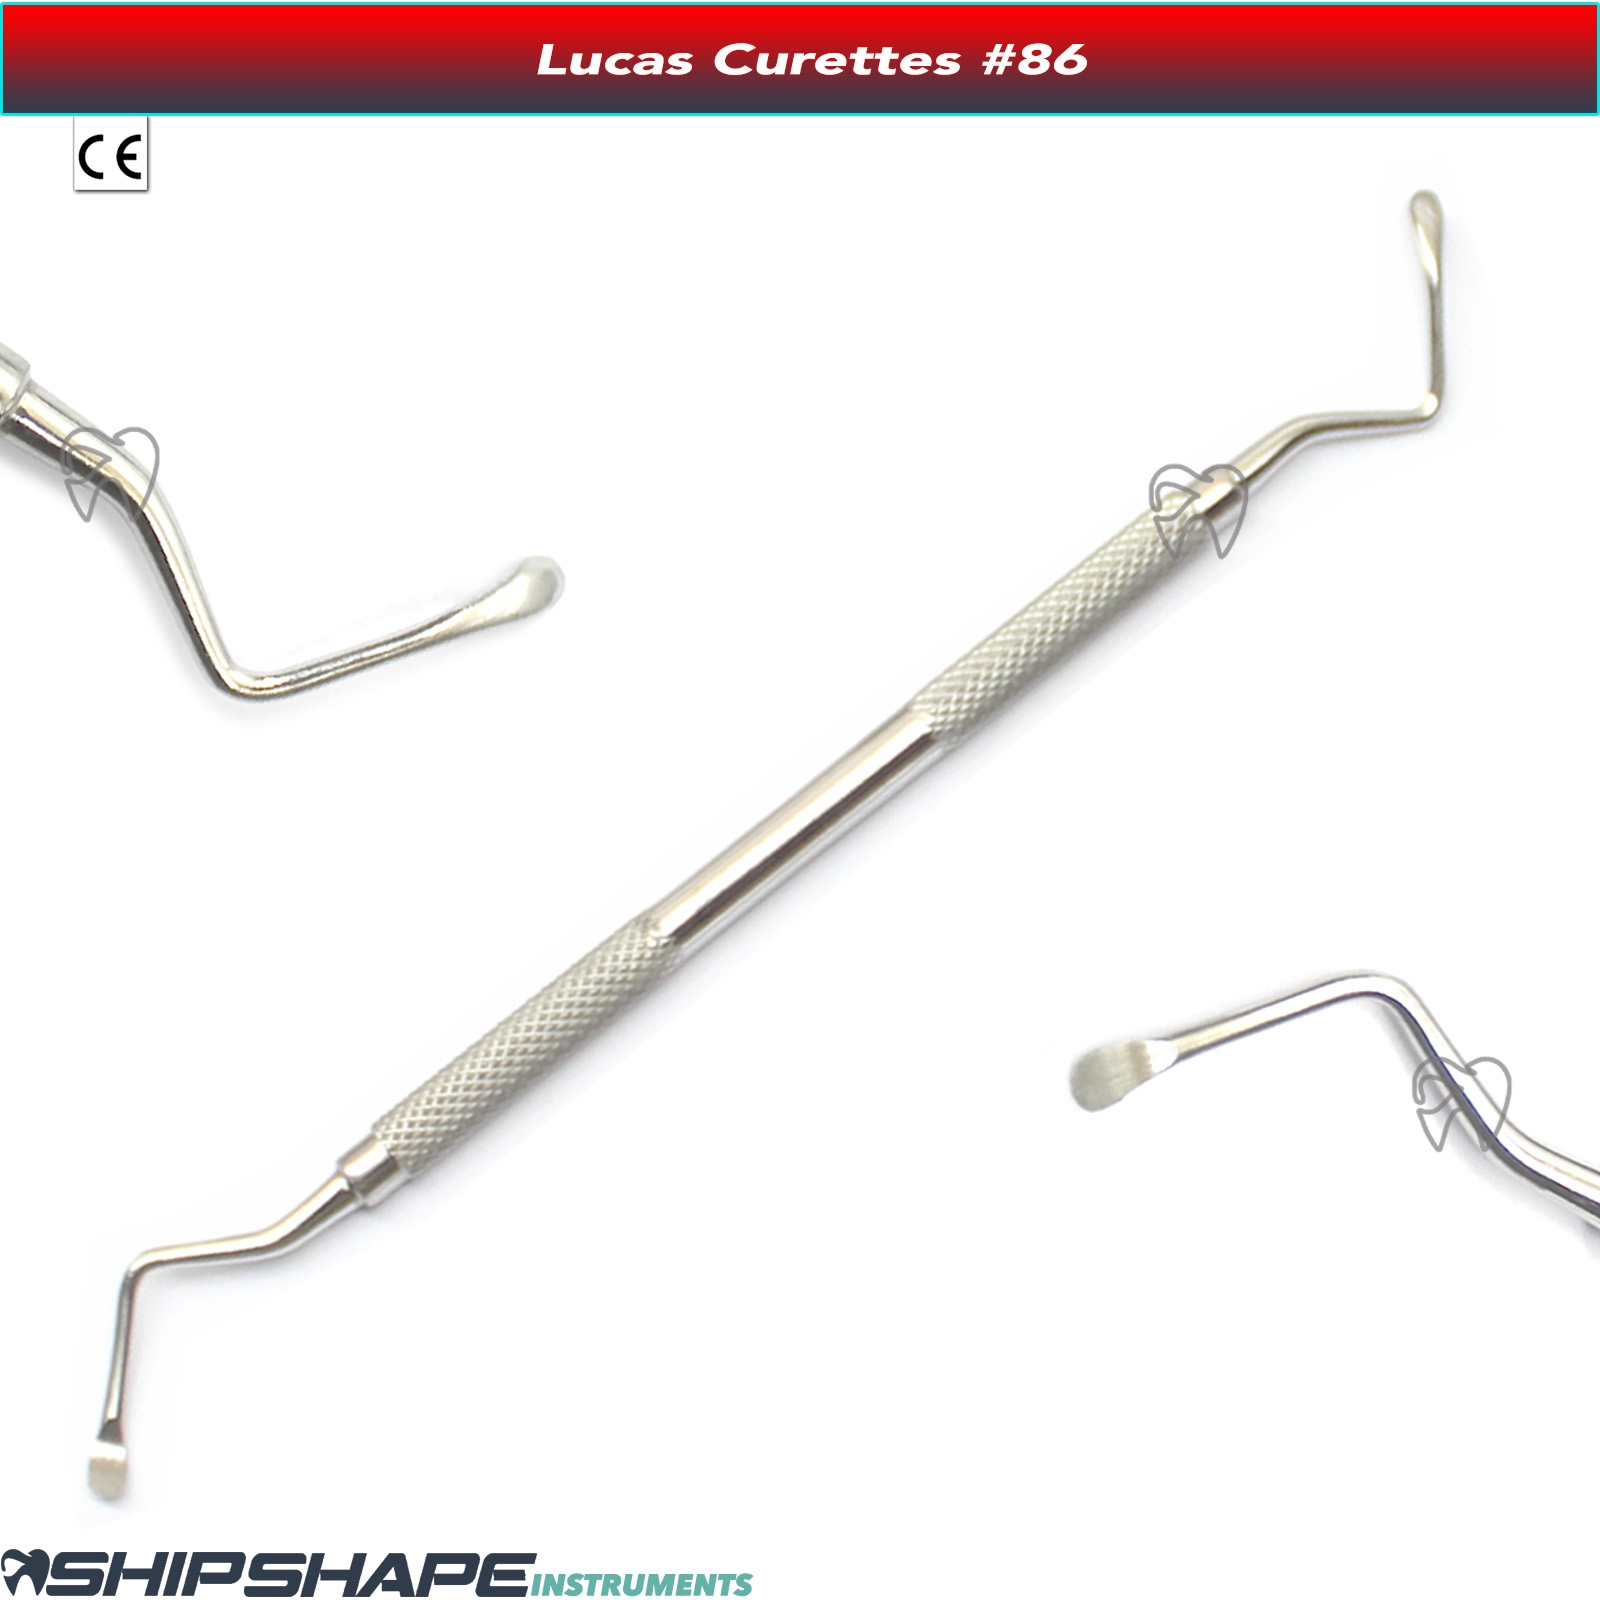 Lucas Curette Periodontal Bone Curettes Dental Surgical Instruments Fig no. #85, #86, #87, #88-1696